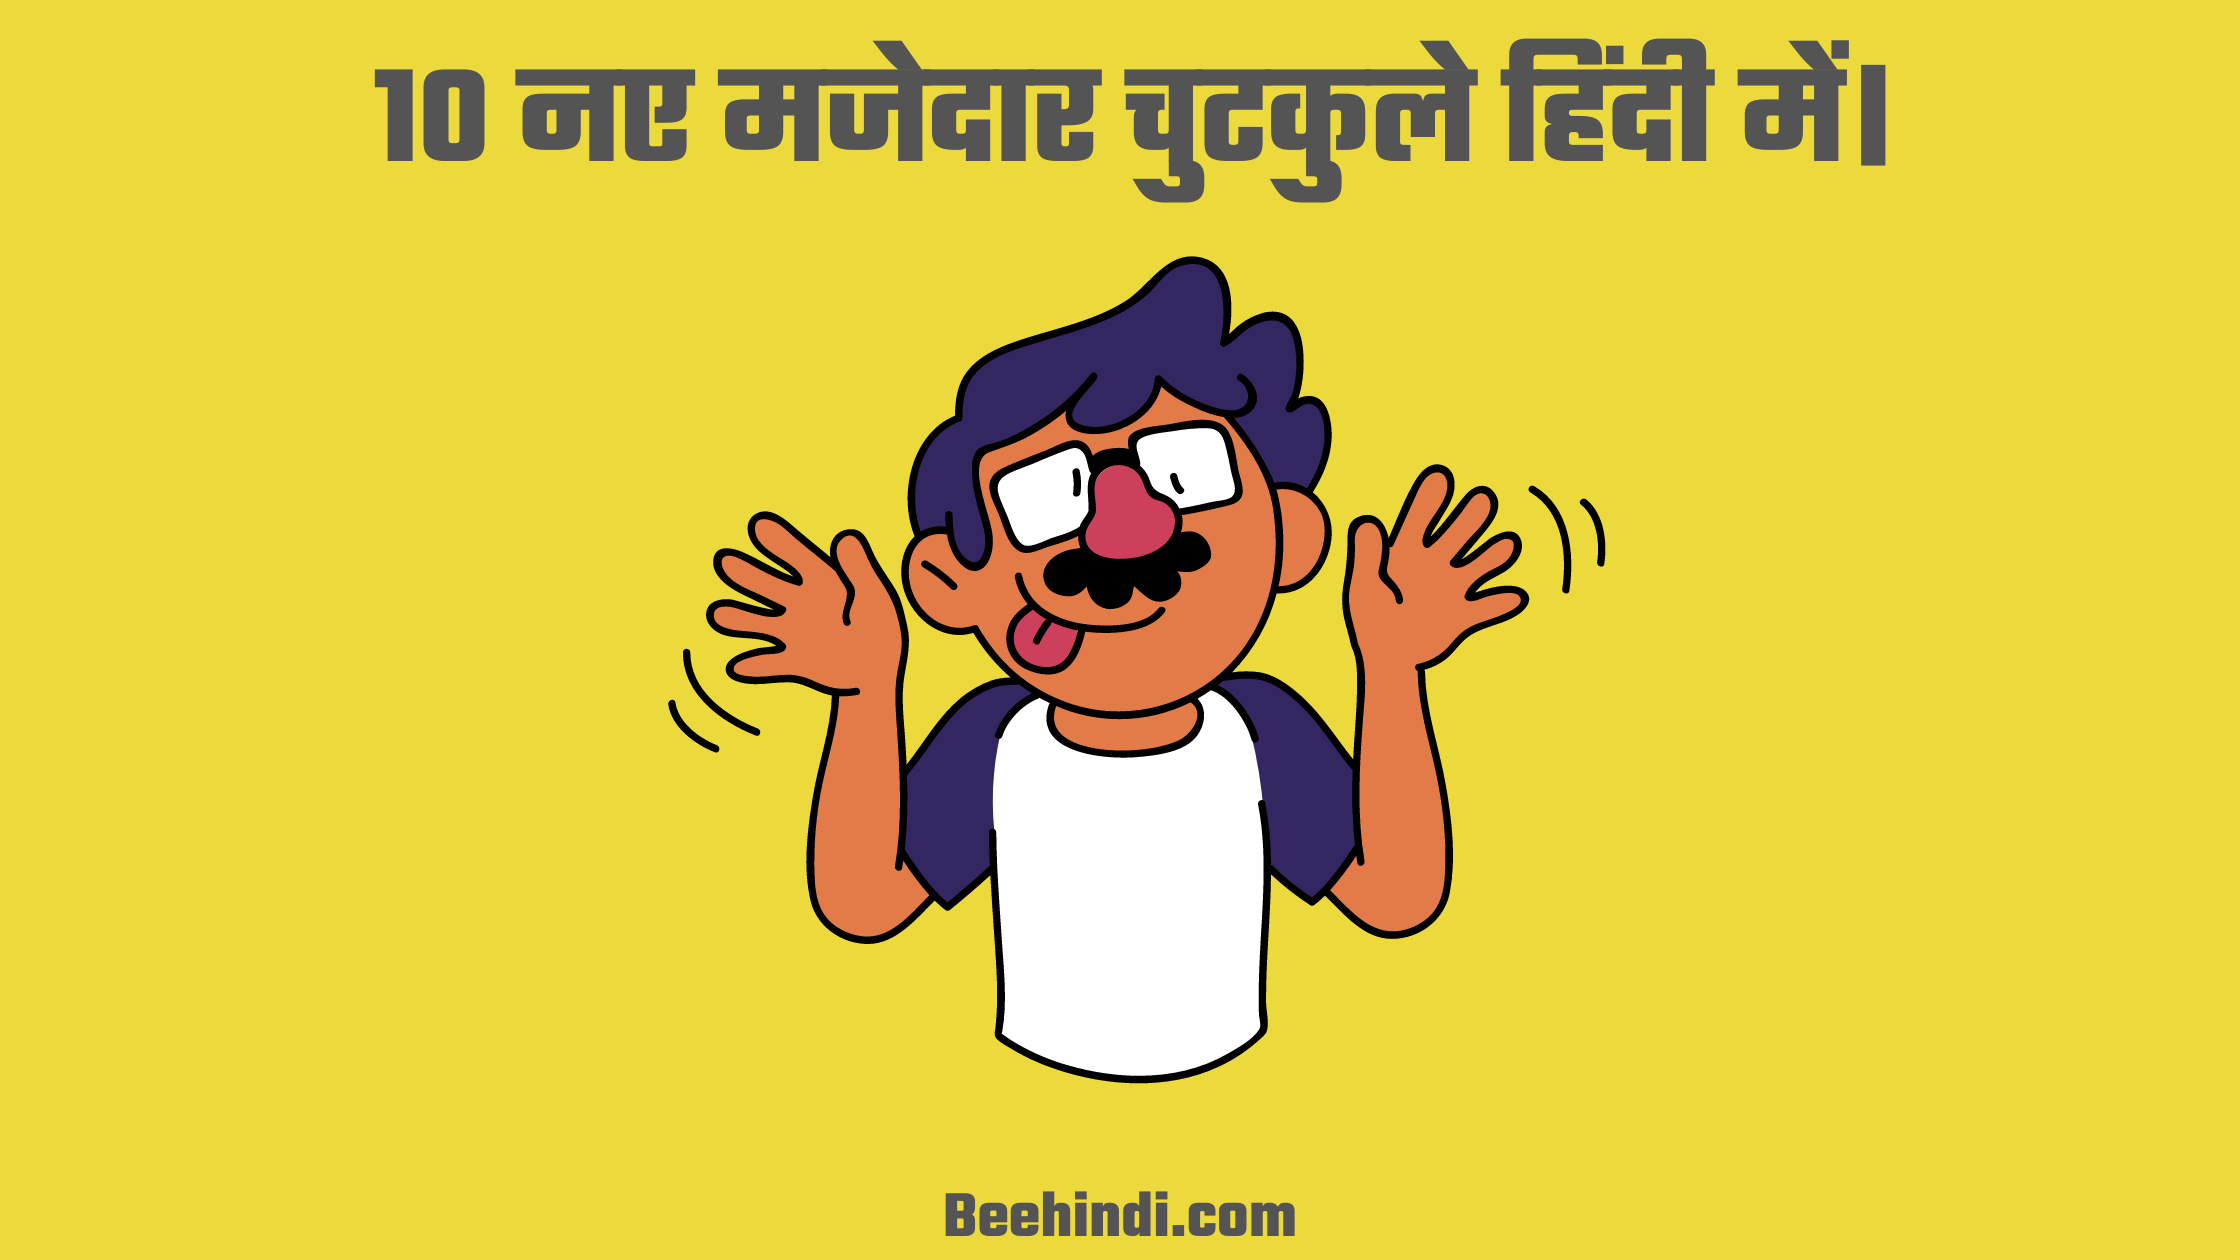 10 नए मजेदार चुटकुले हिंदी में।